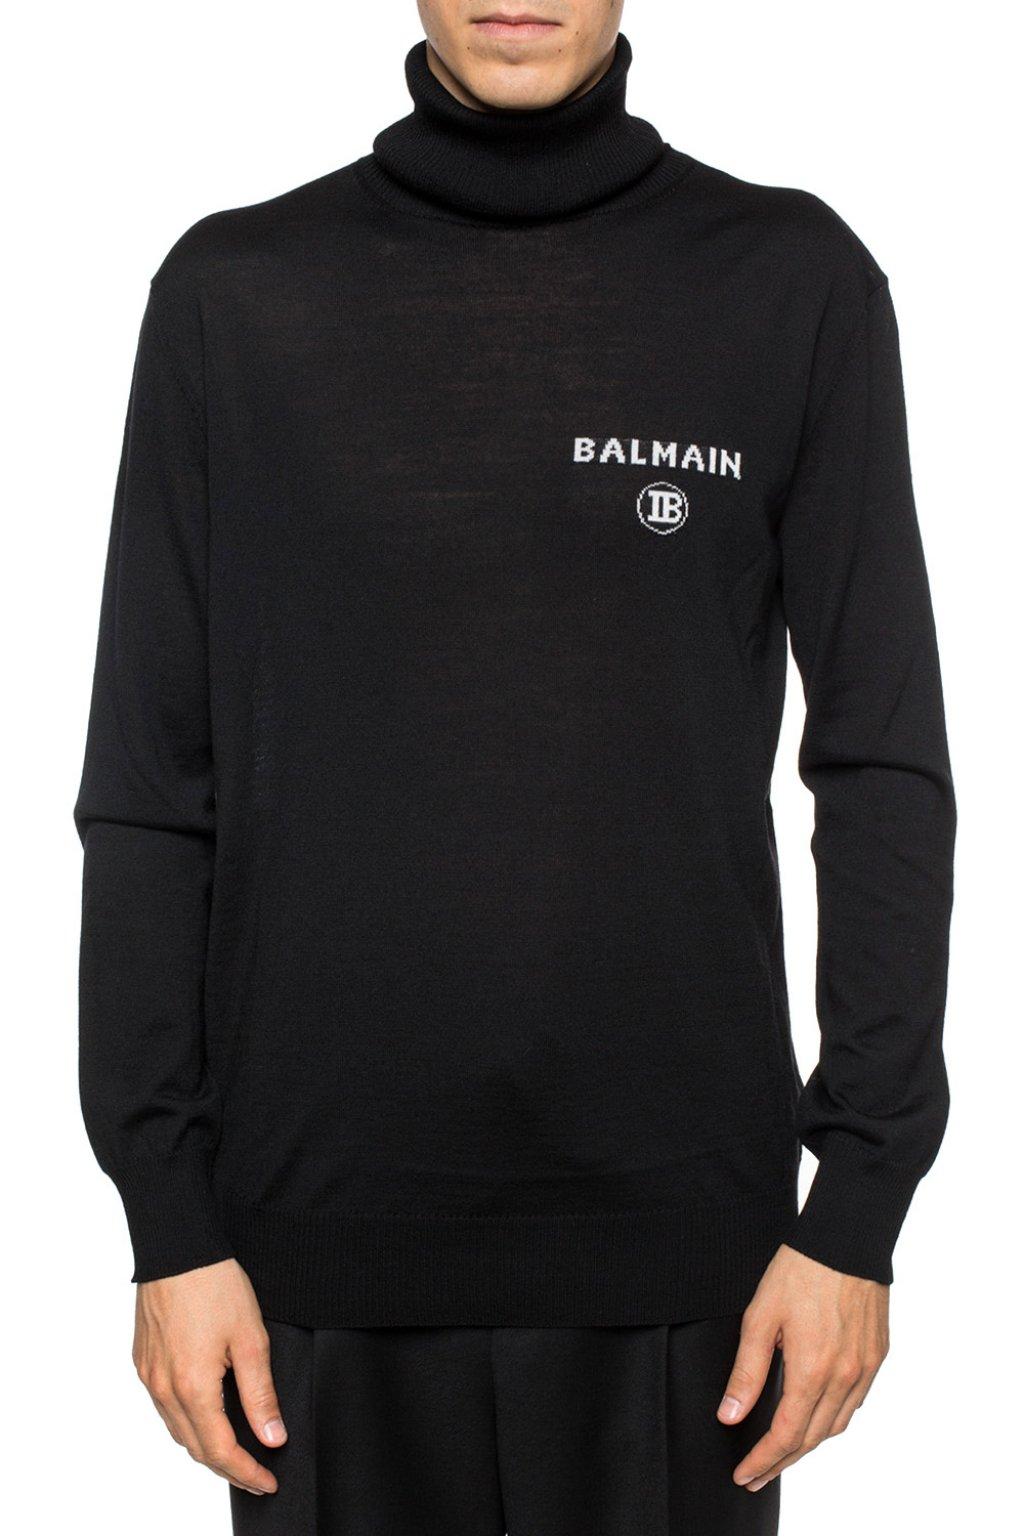 Balmain Wool Intarsia Logo Turtleneck Sweater in Black for Men - Save 5 ...